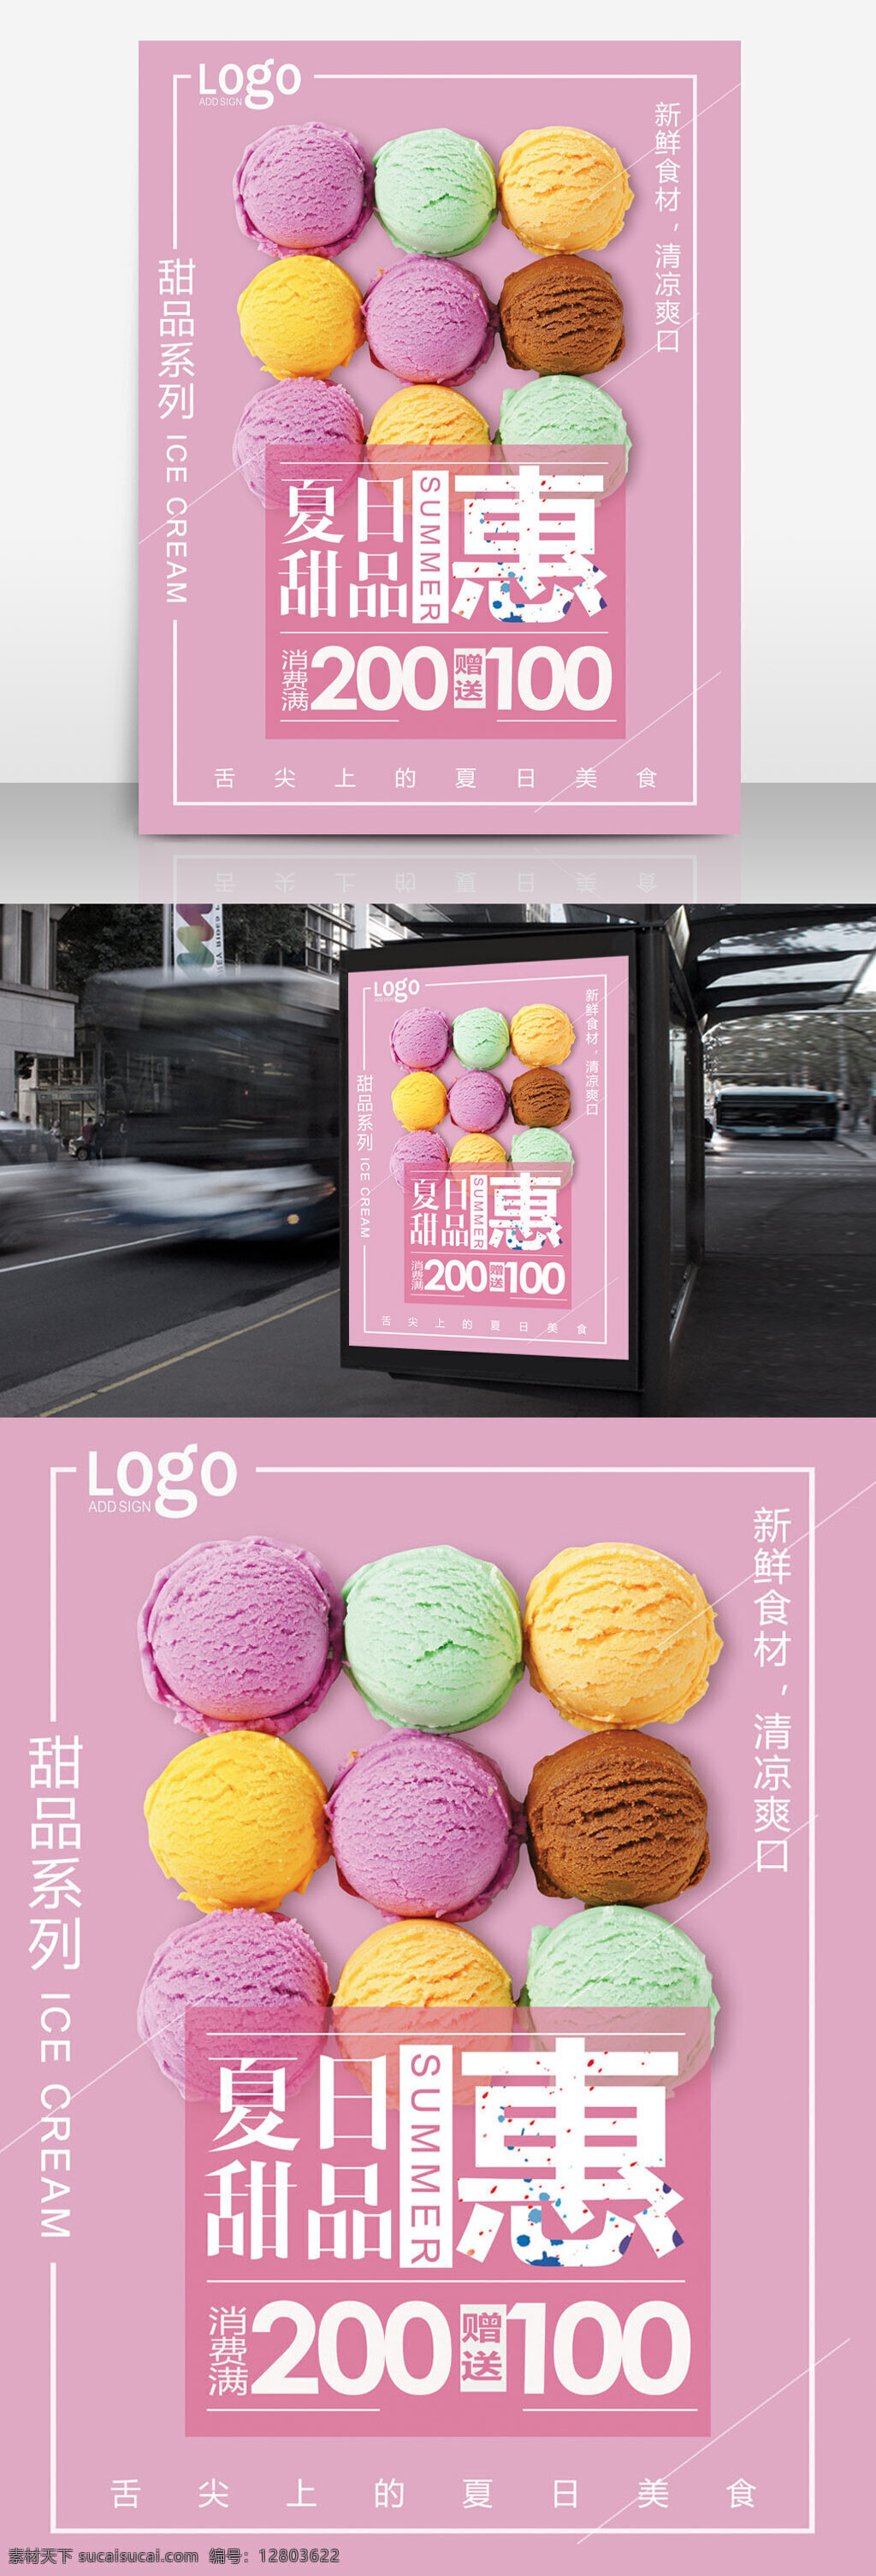 冰淇淋 促销 海报 夏日 甜品 马卡 龙 色 夏日甜品海报 美食海报 美食节